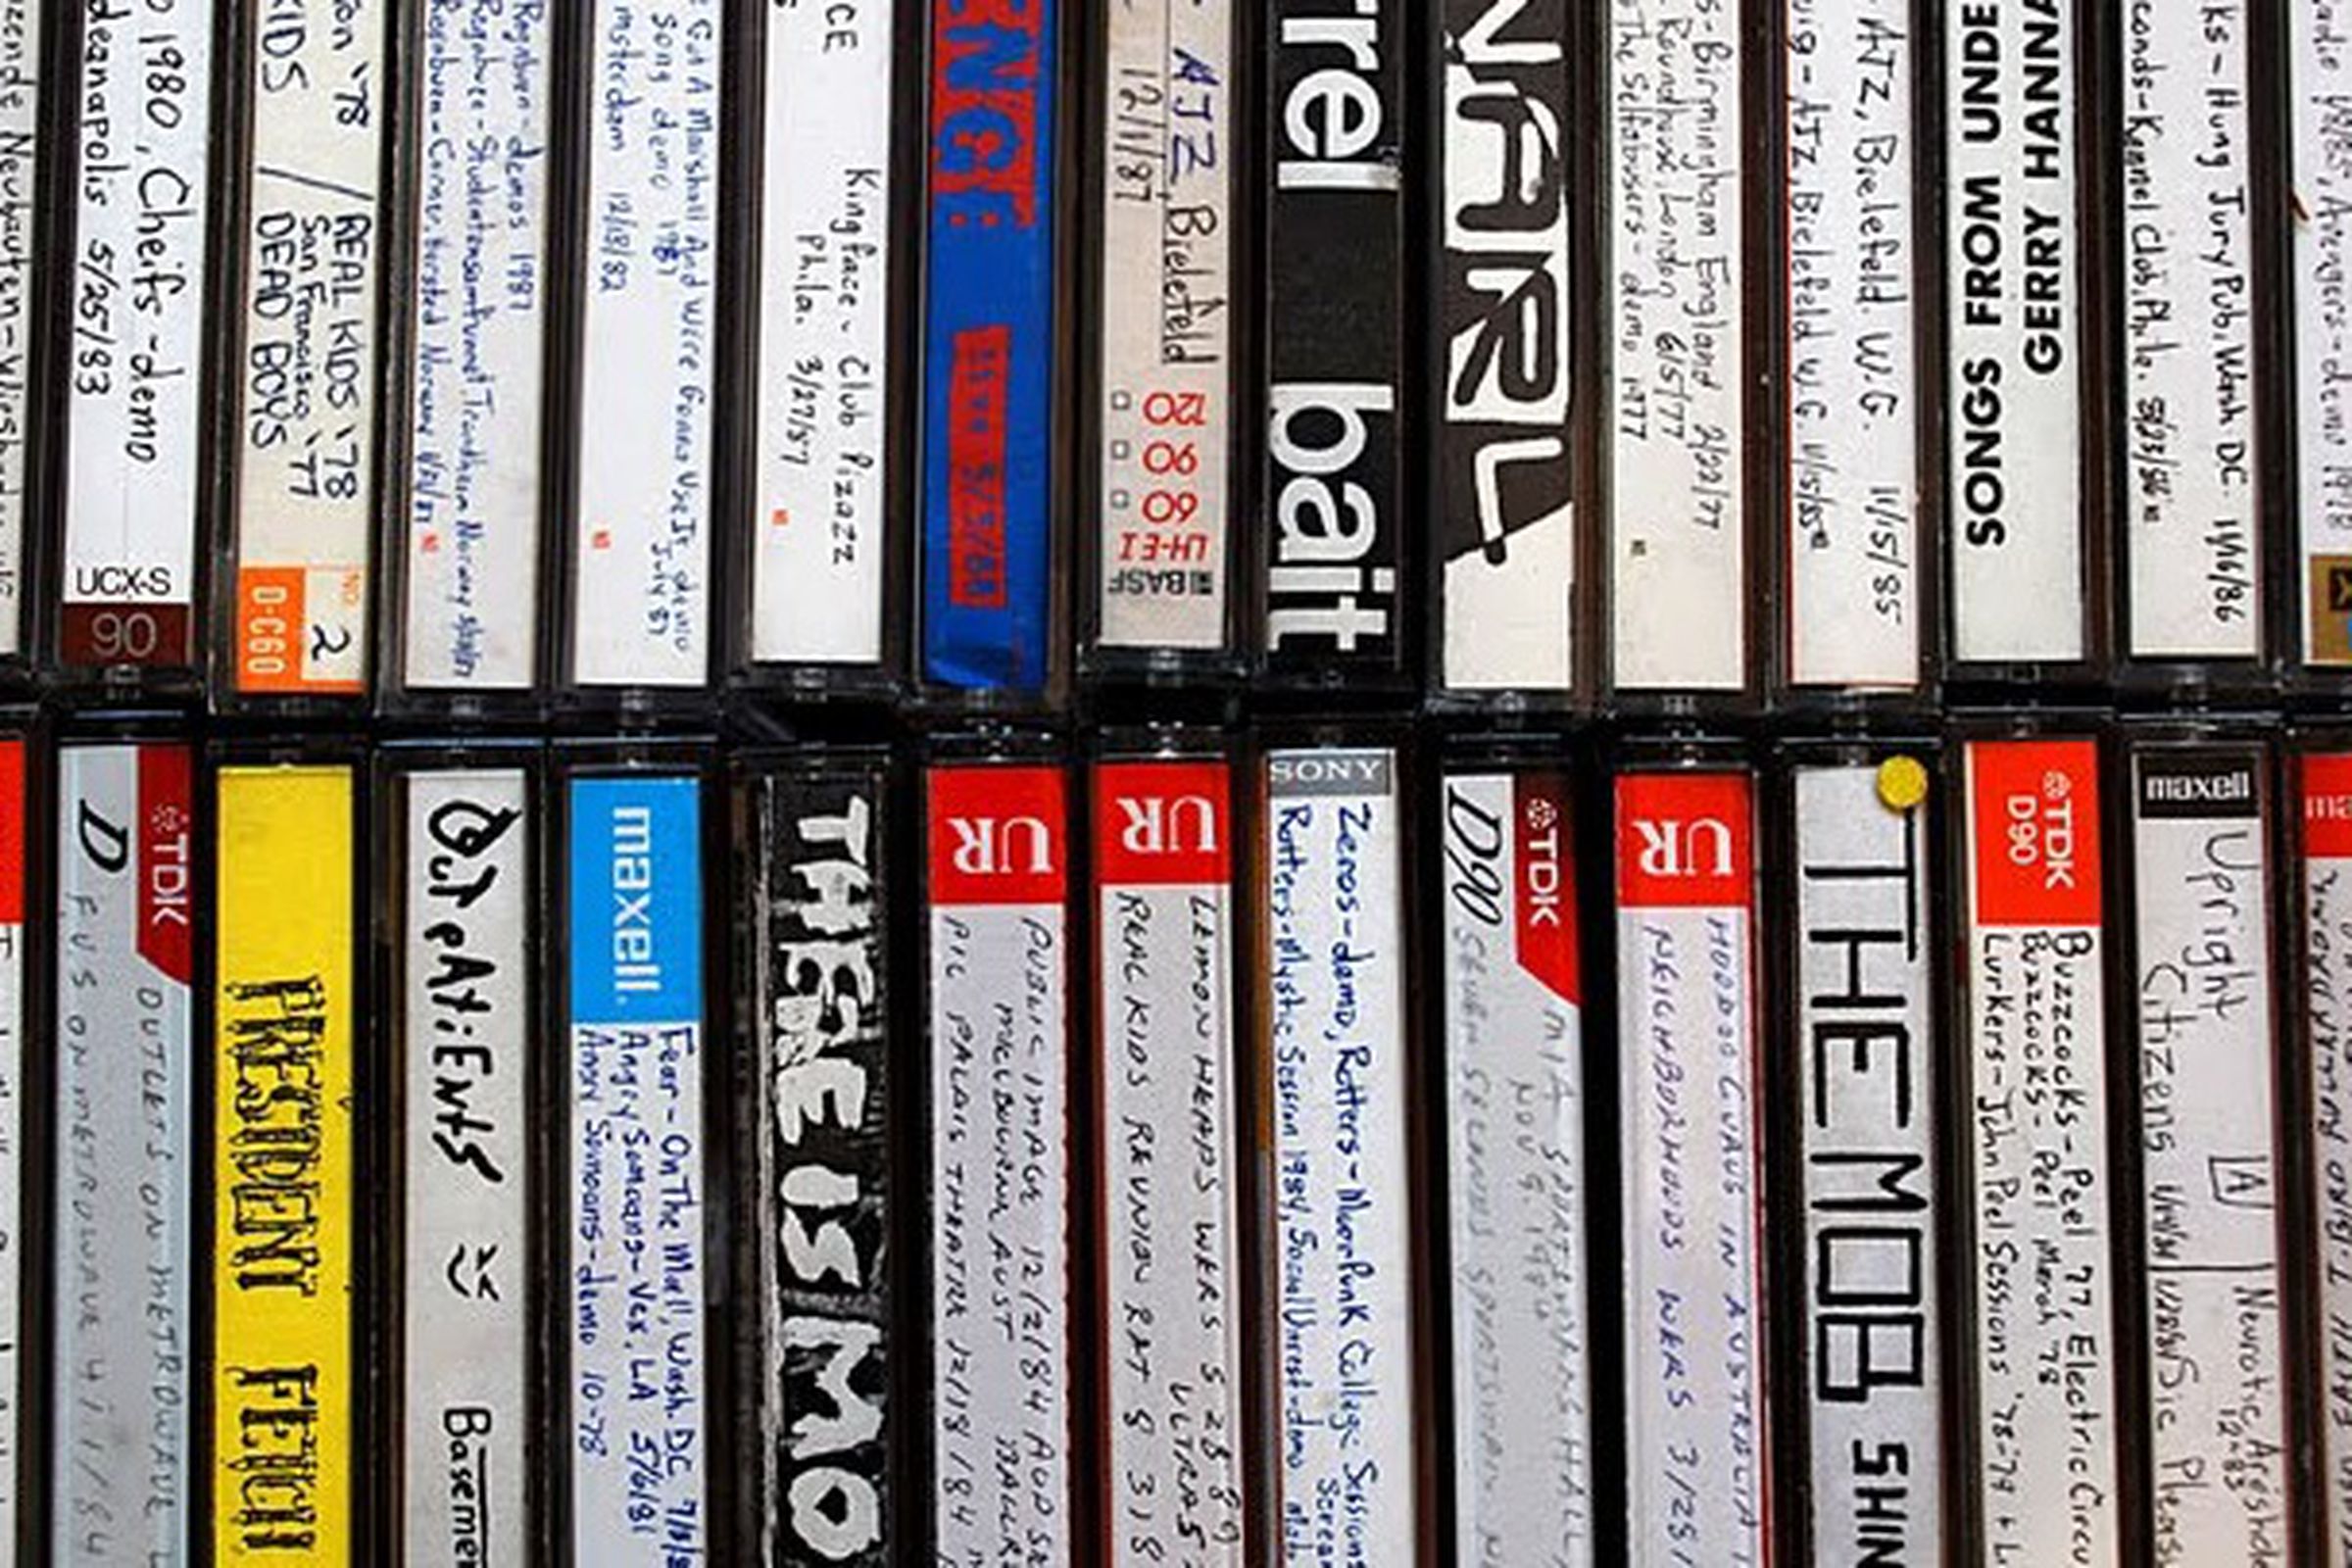 Bootlegged cassette tapes